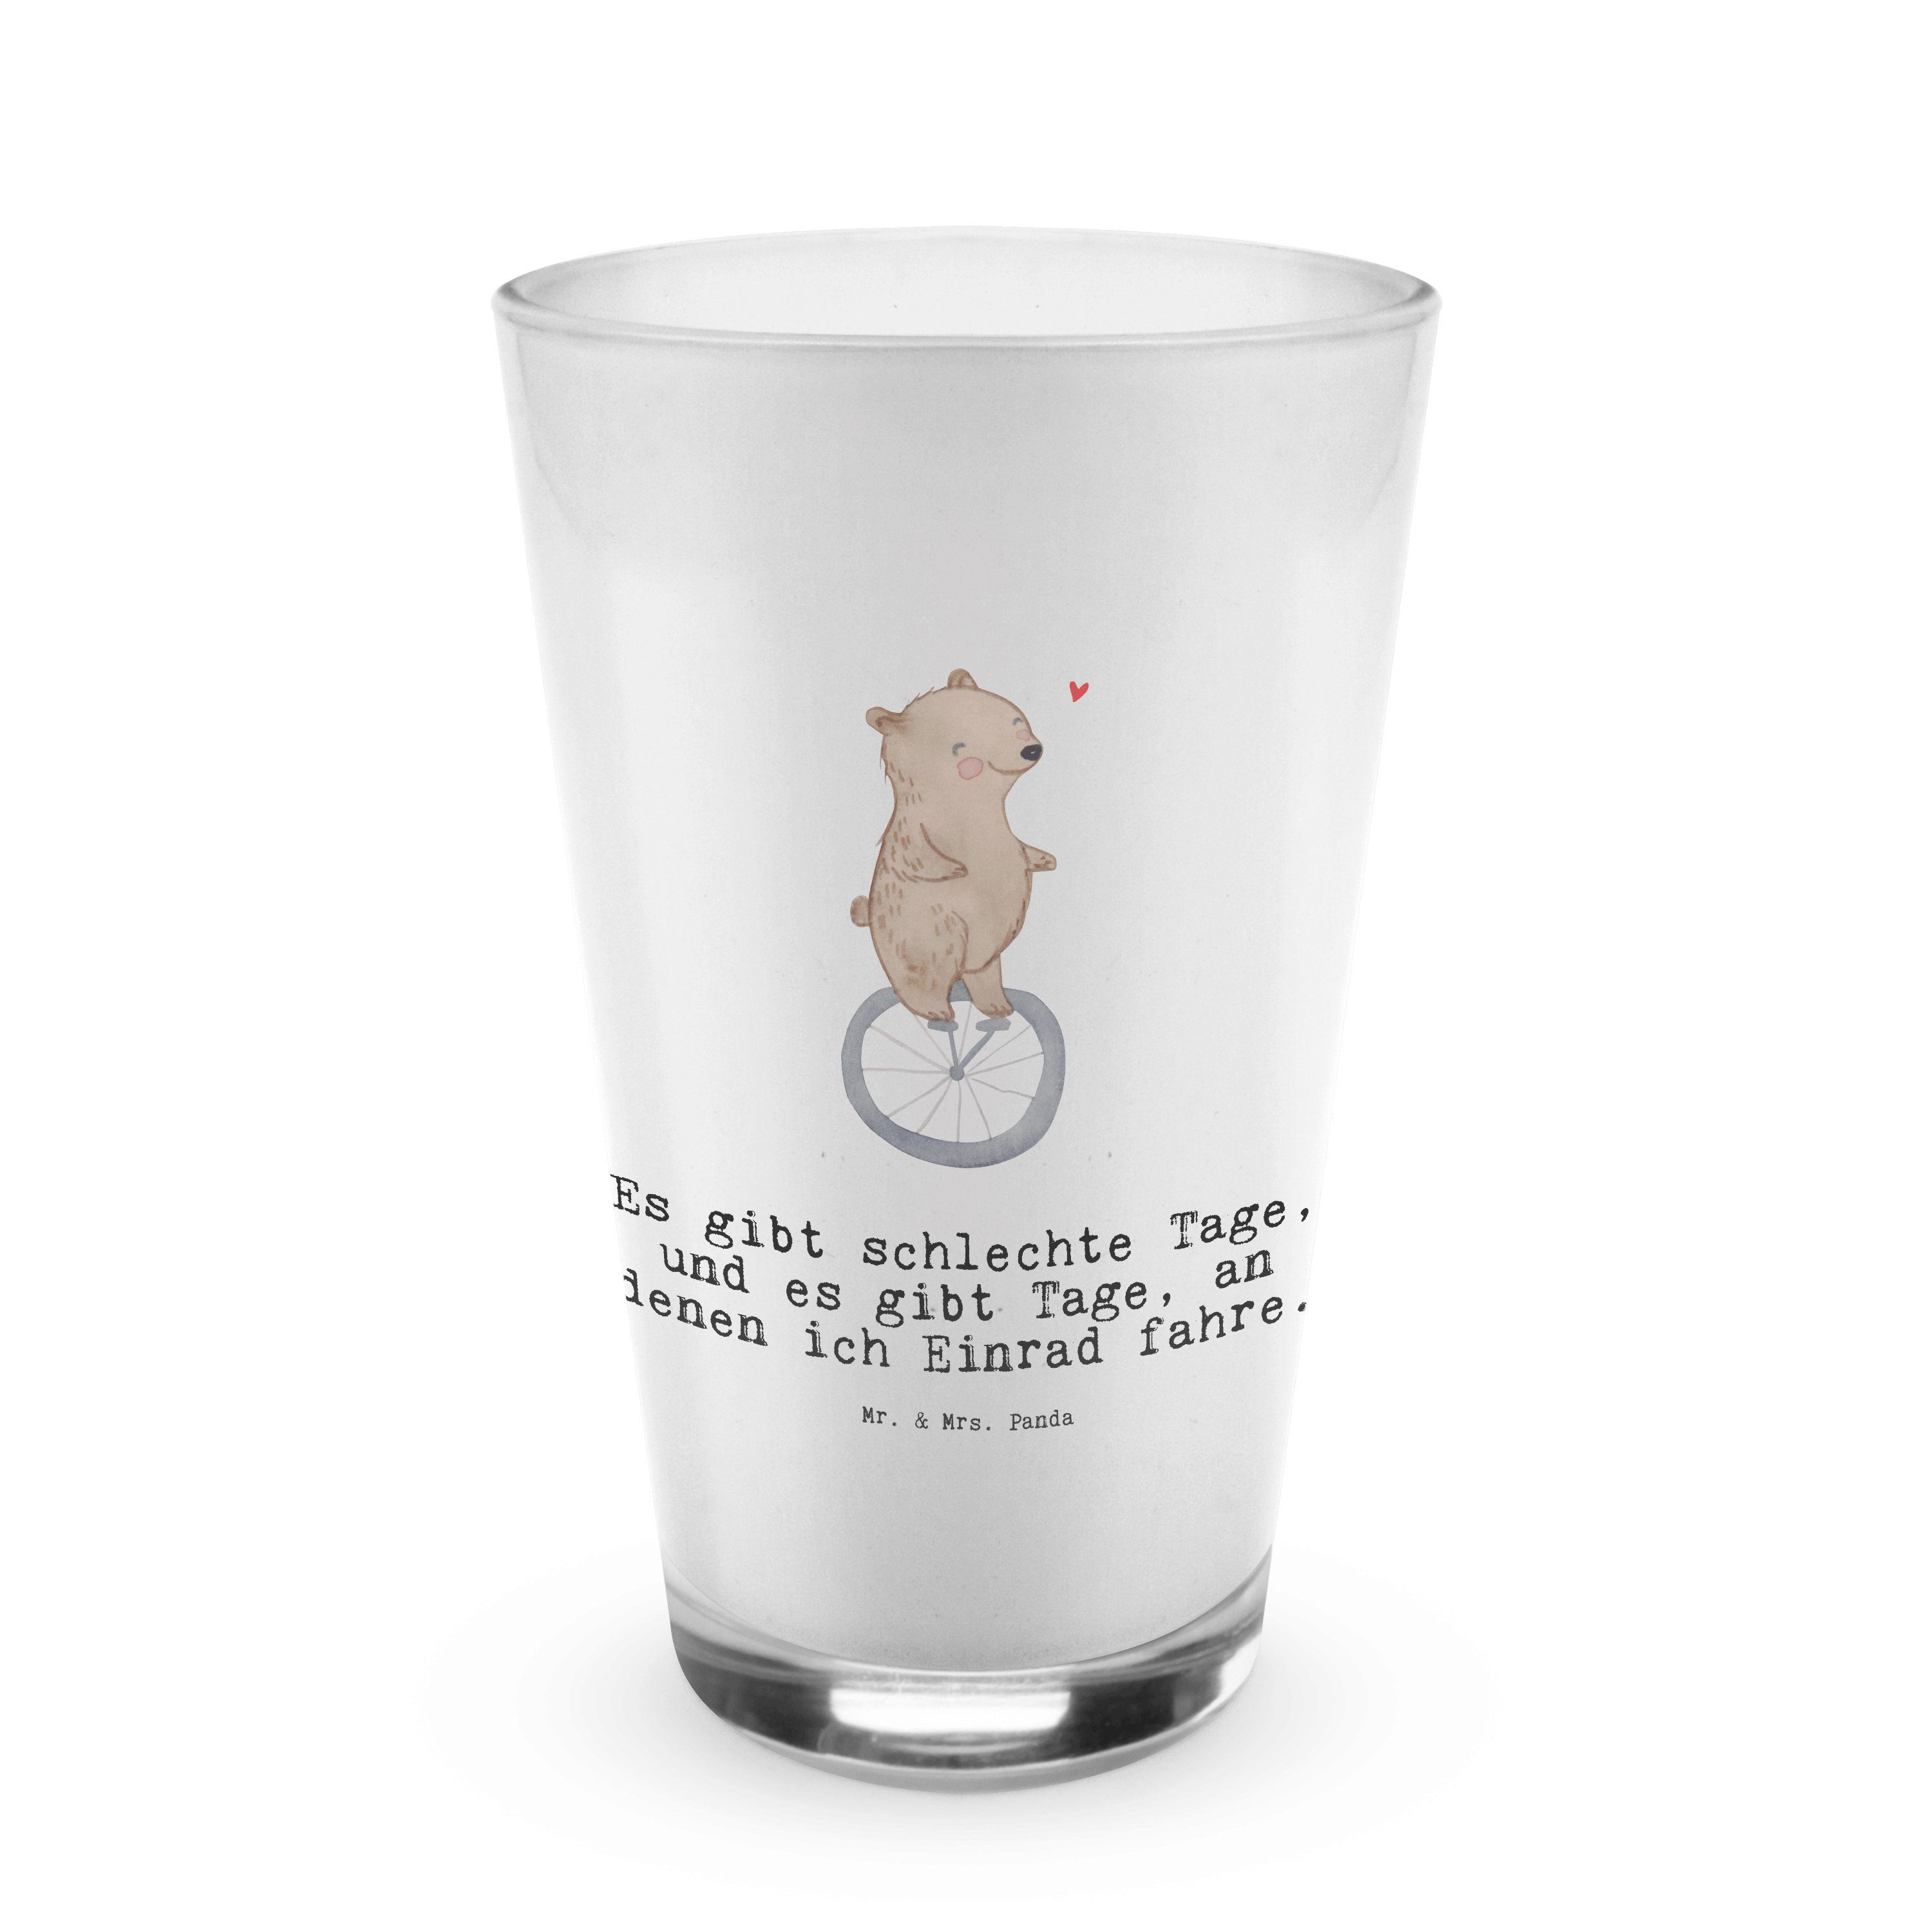 Tage Premium Mr. Geschenk, Mrs. Panda Einrad Glas Bär Gewinn, fahren - - Glas Macchi, & Latte Transparent